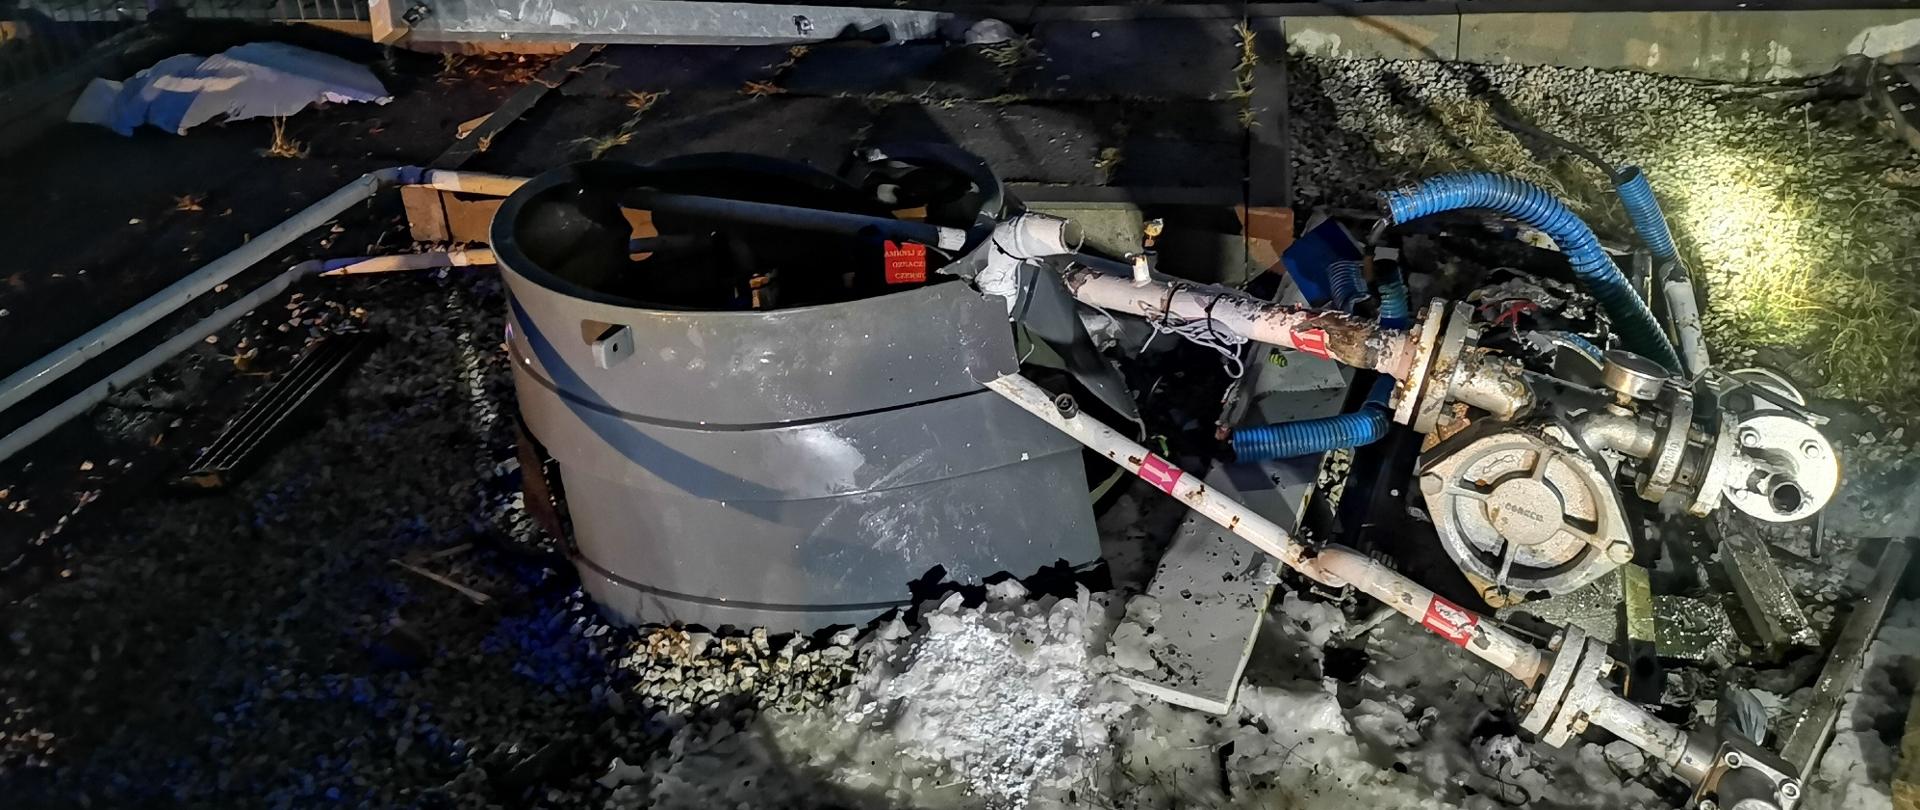 Zdjęcie przedstawia osprzęt napełniania podziemnego zbiornika LPG na stacji paliw, który został uszkodzony przez znajdujący się w tle samochód ciężarowy